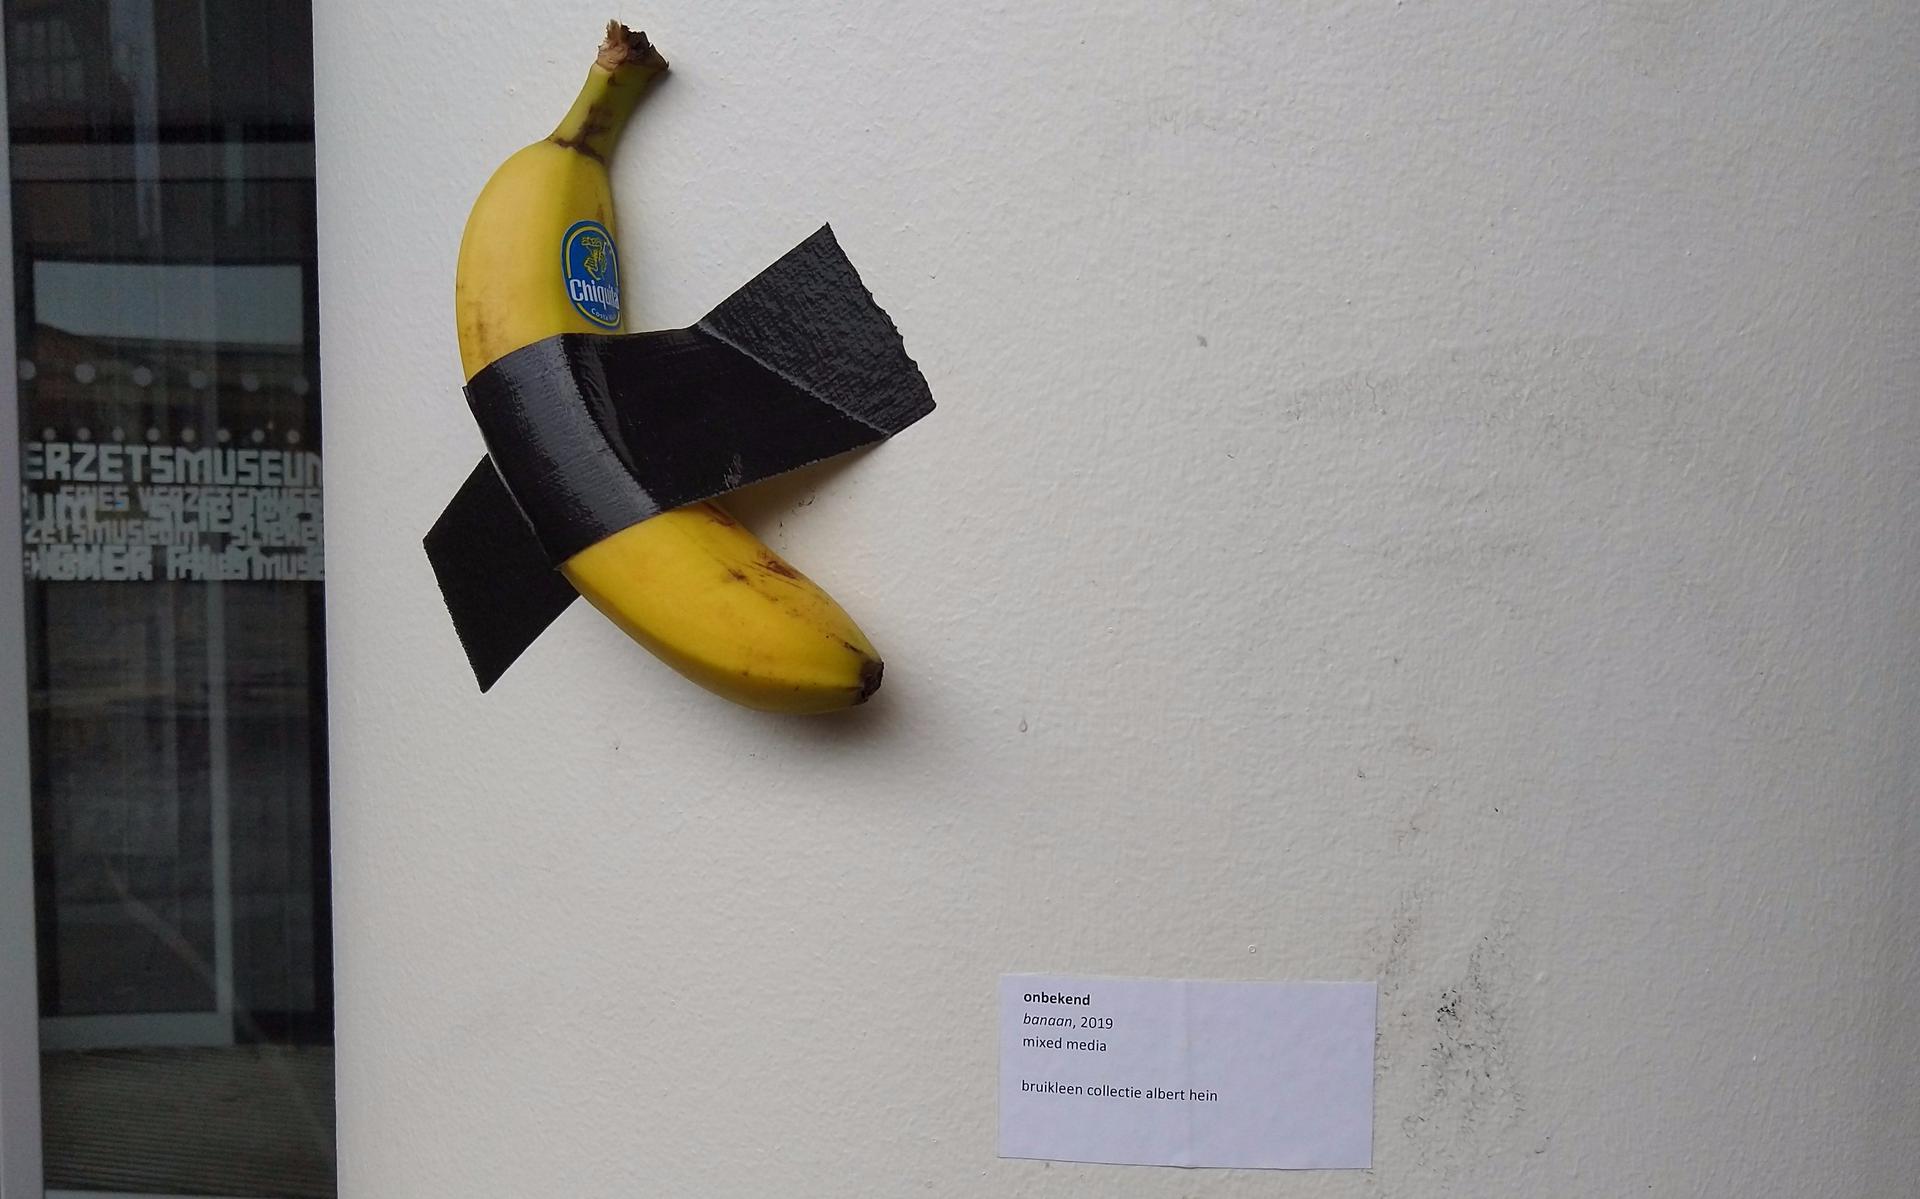 De banaan is met ducttape op een muur geplakt in het Fries Museum. FOTO: Fries Museum